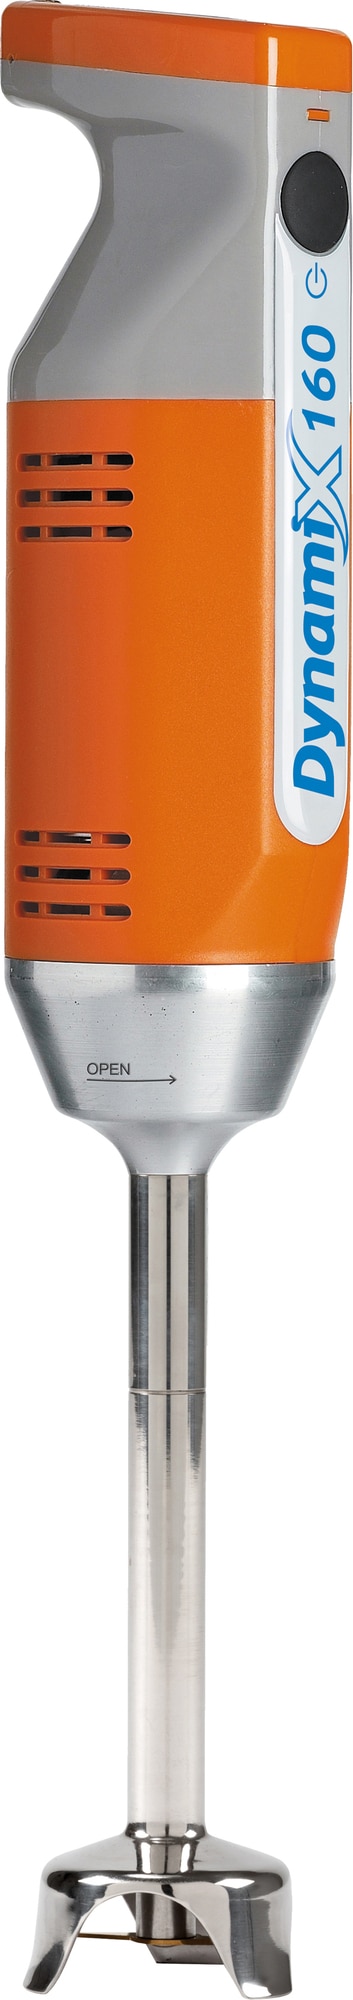 Dynamix stavblender MX050 (orange) thumbnail